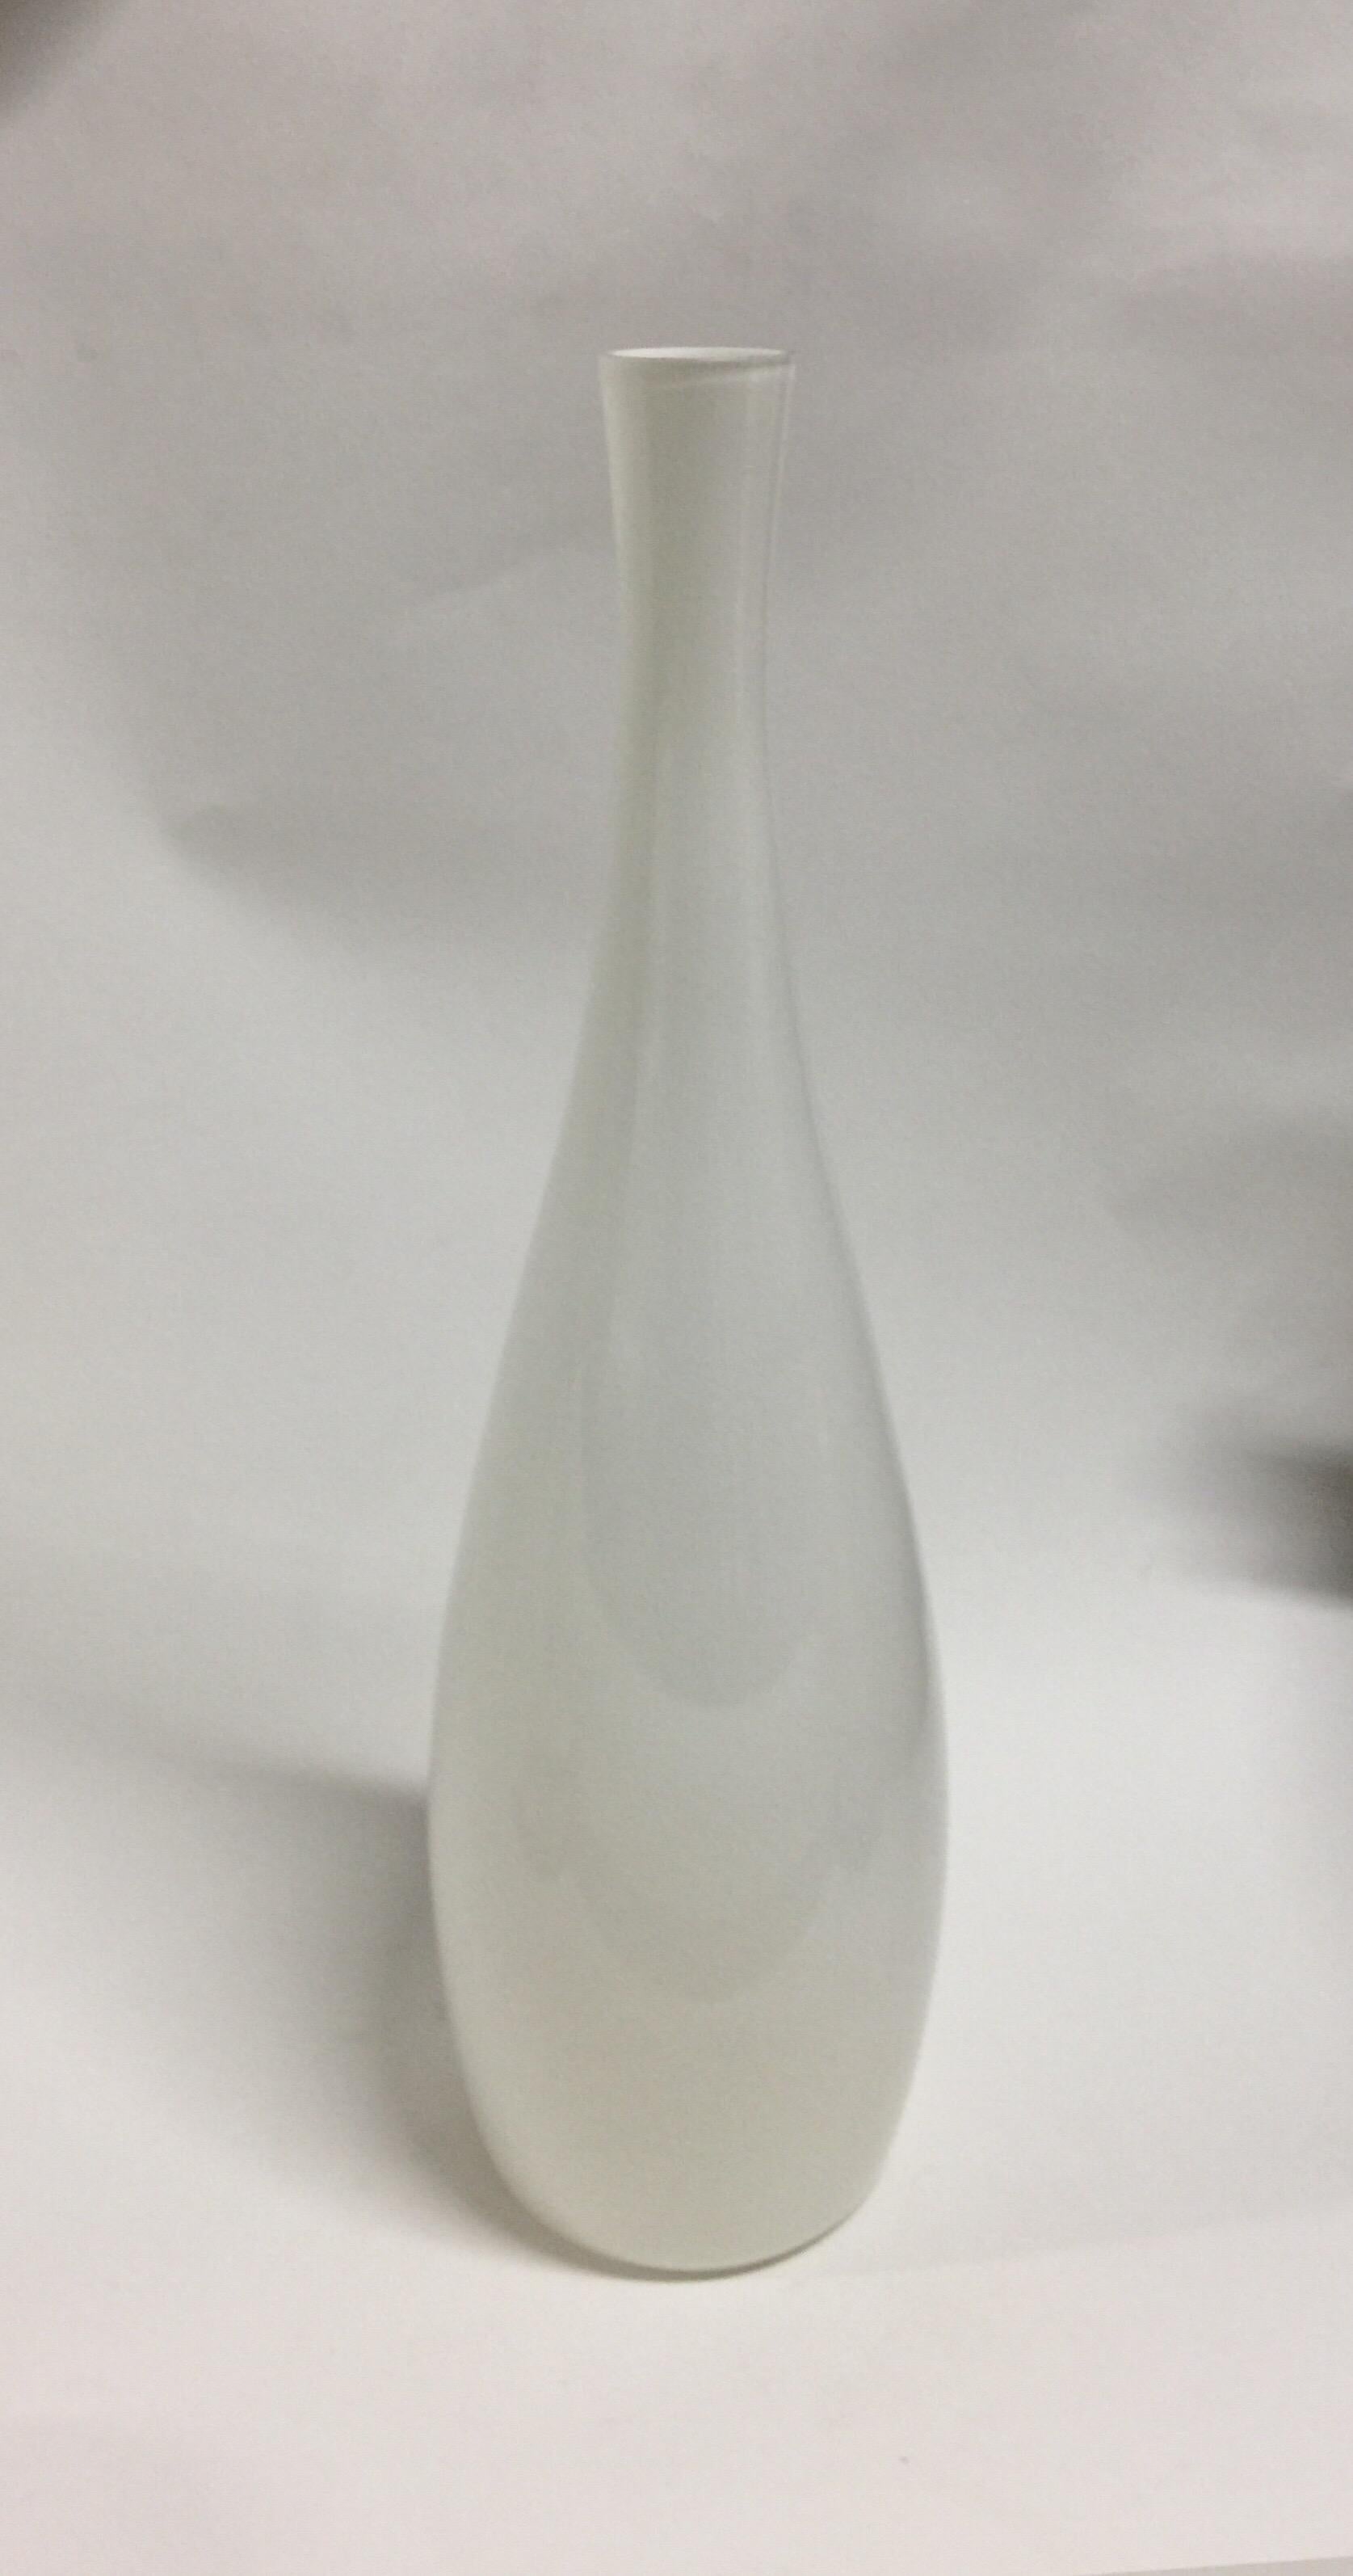 Eine alte und hohe Vase aus Kunstglas von Jacob Bang für Kastrup. Dänemark, um 1950.

Weiß. Hergestellt aus überfangenem Glas mit einer schönen schillernden Qualität. Teilweise mit Originaletikett am Sockel. Insgesamt in gutem Zustand; bitte